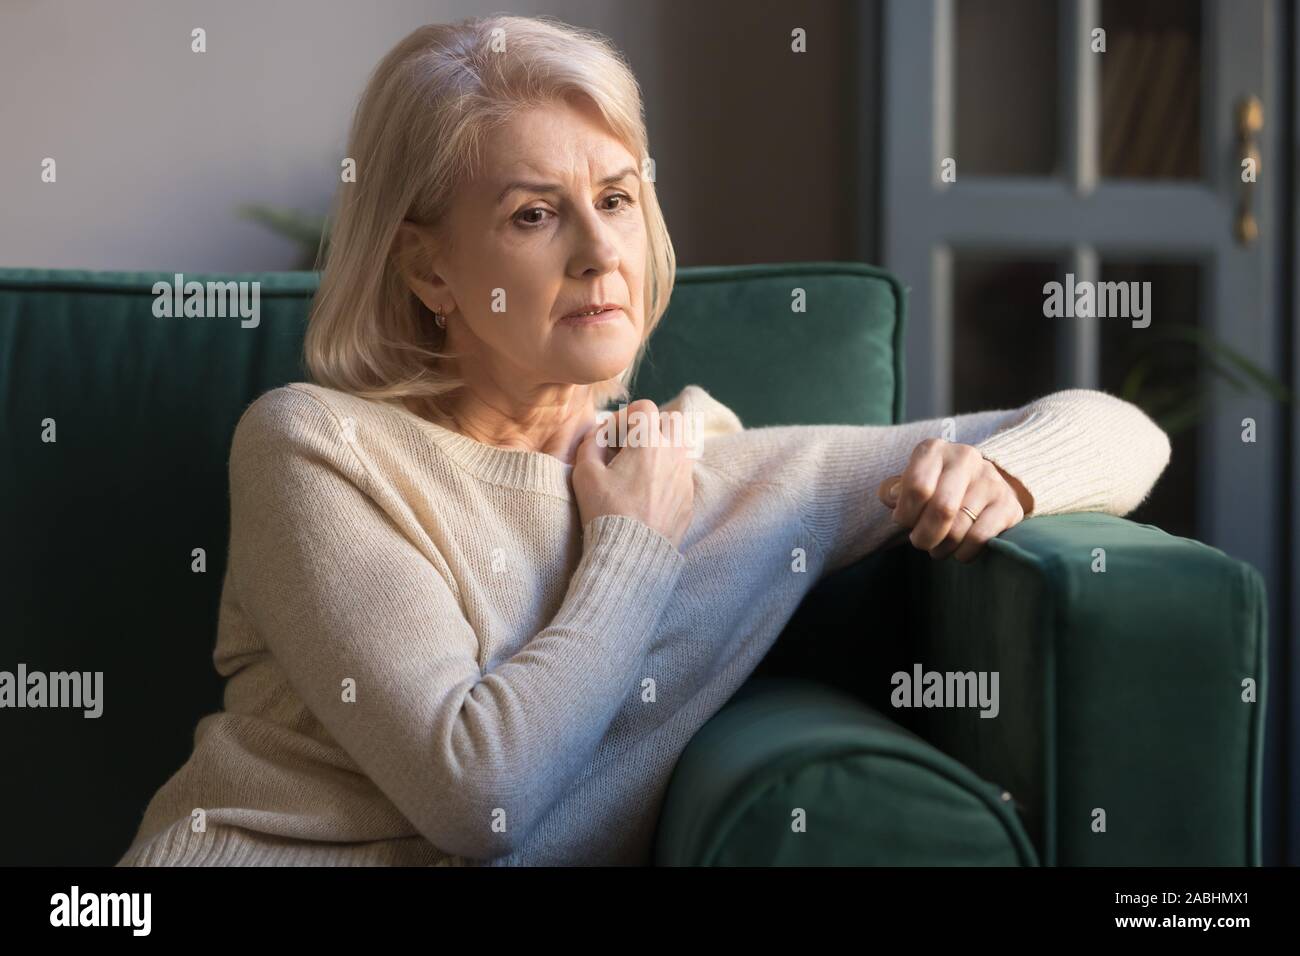 Dépression mature femme perdue sur des pensées sitting on couch Banque D'Images